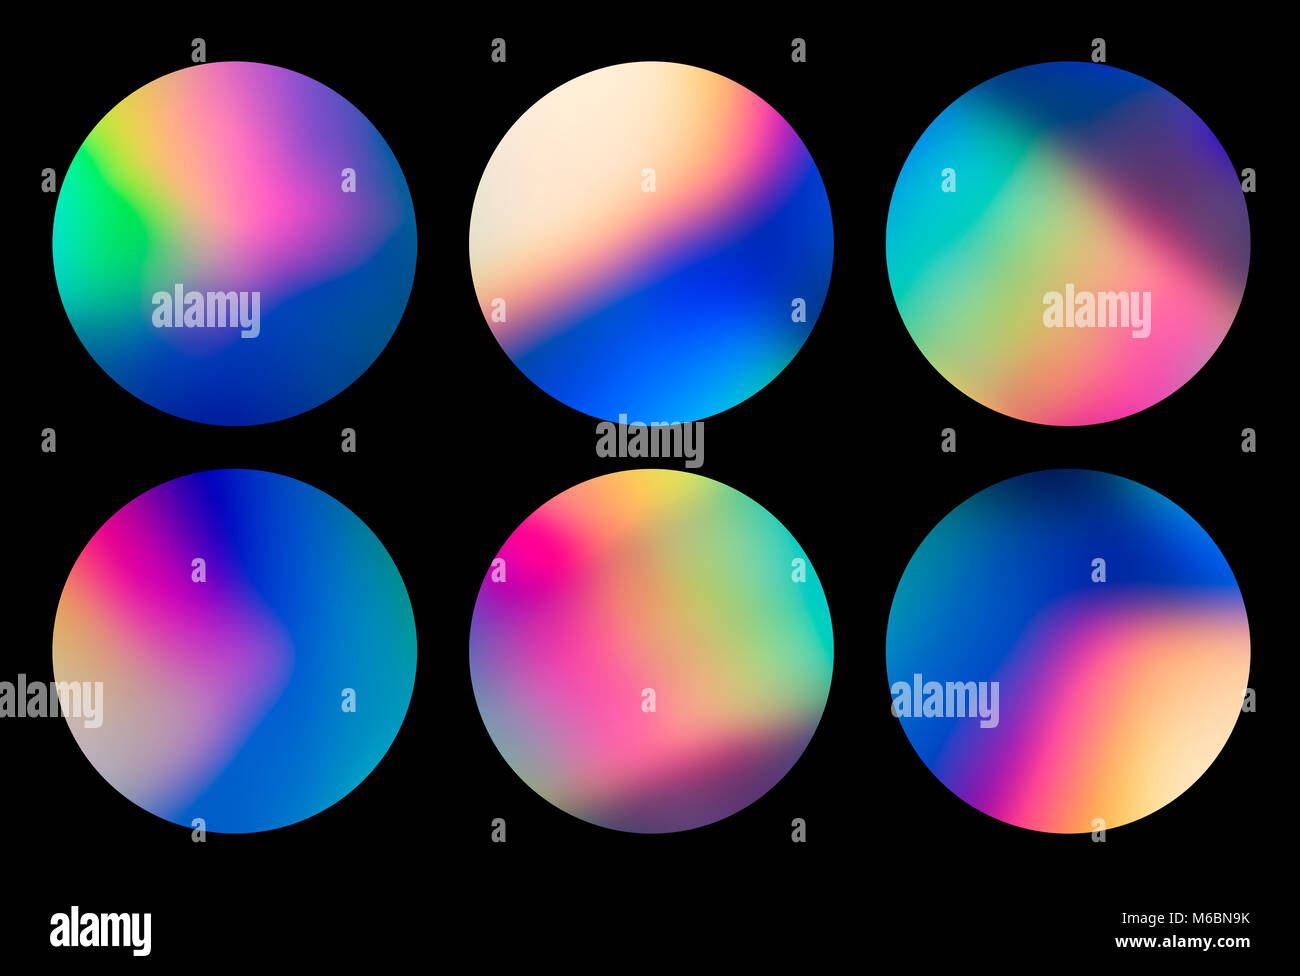 Espectro holográfico vaporwave abstractos diseños circulares, fondo de colores de moda en tonos color de neón. Cubierta para el diseño creativo, CD, poster book Foto de stock